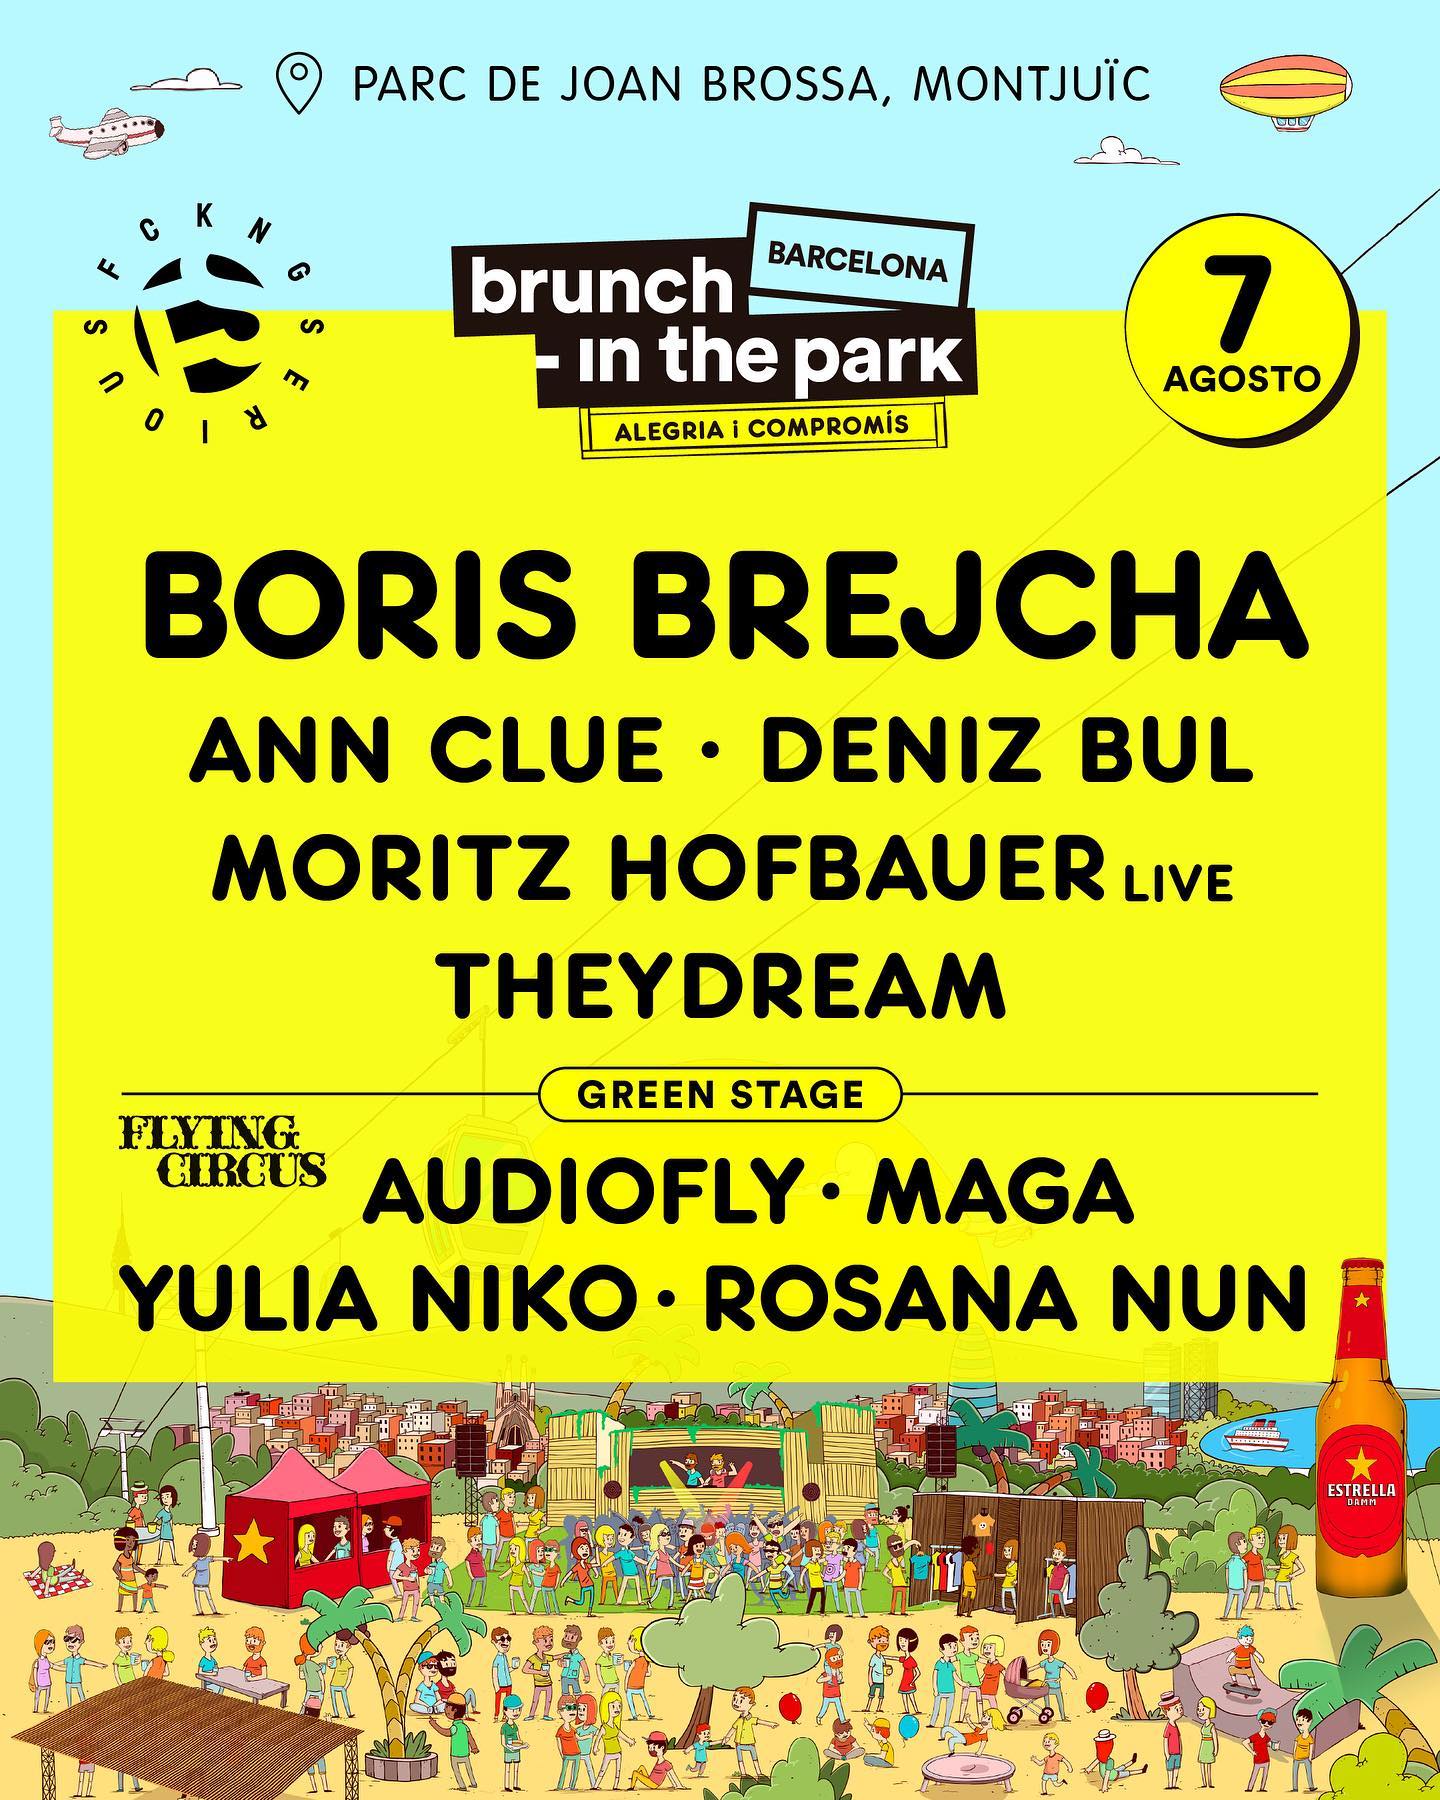 brunch-in-the-park-barcelona-7-AGT